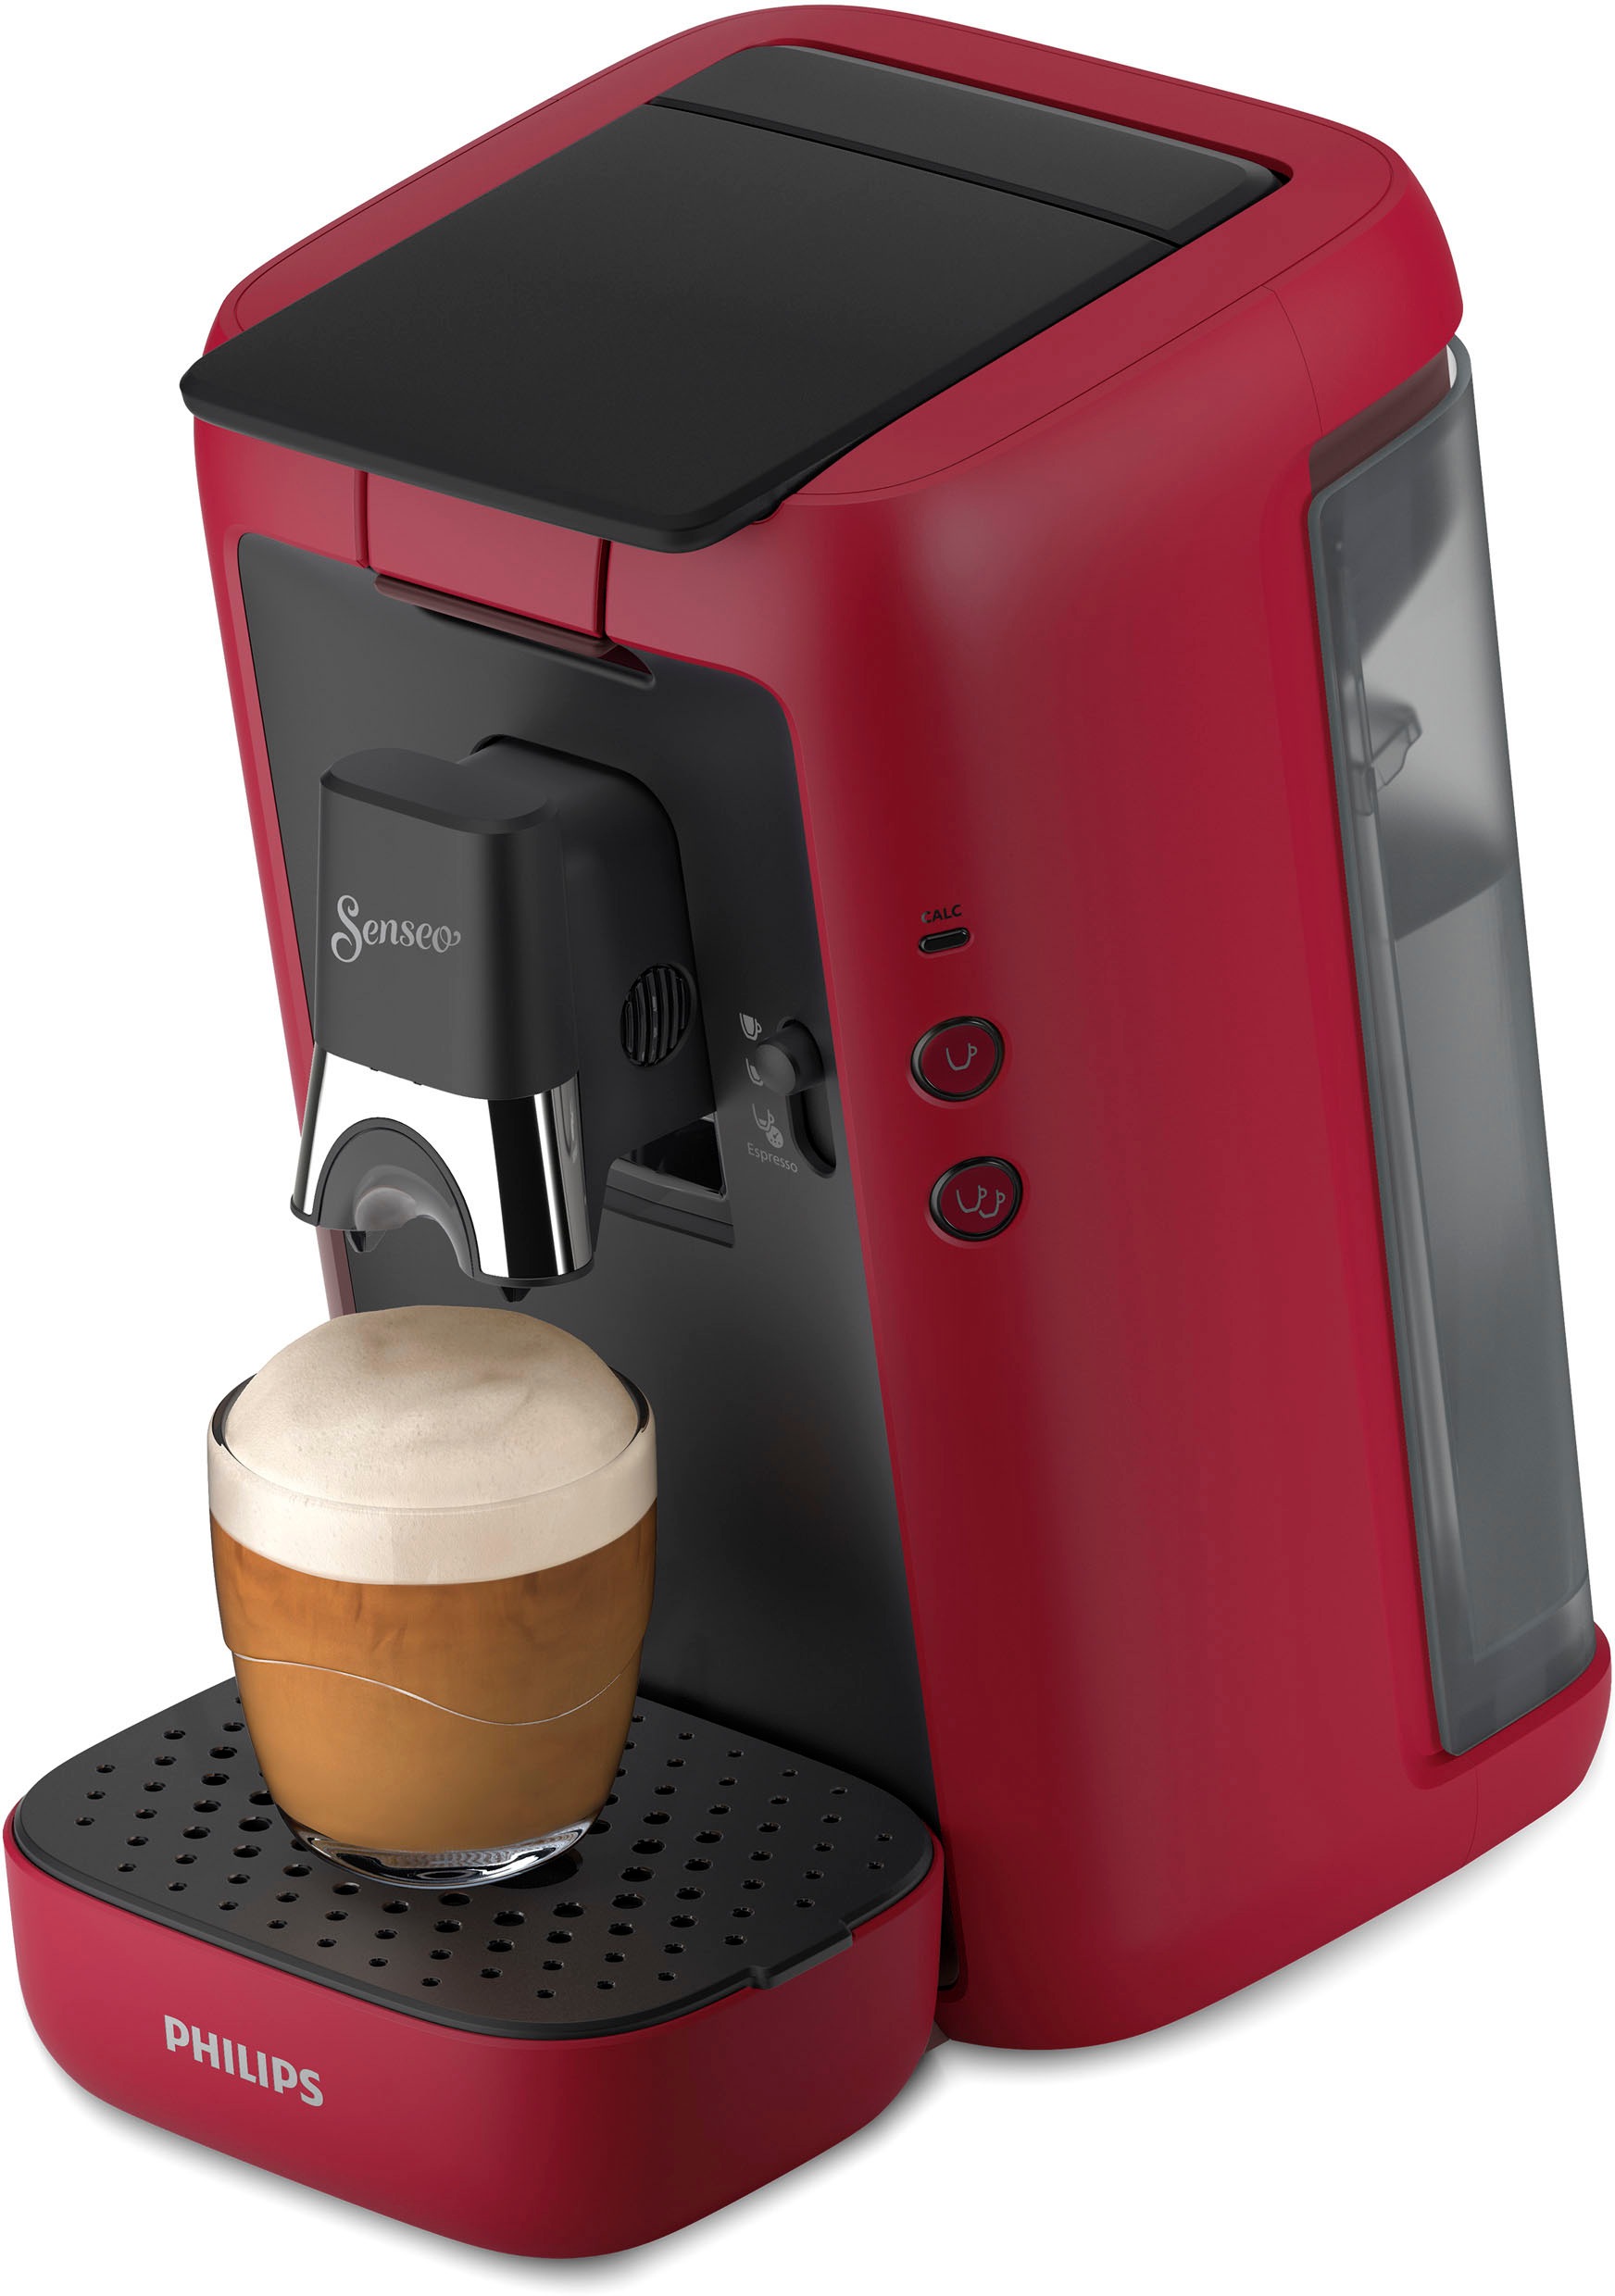 Philips Senseo Kaffeepadmaschine „Maestro CSA260/90“, inkl. Gratis-Zugaben im Wert von € 14,- UVP tiefrot, matt Rabatt: 13 %